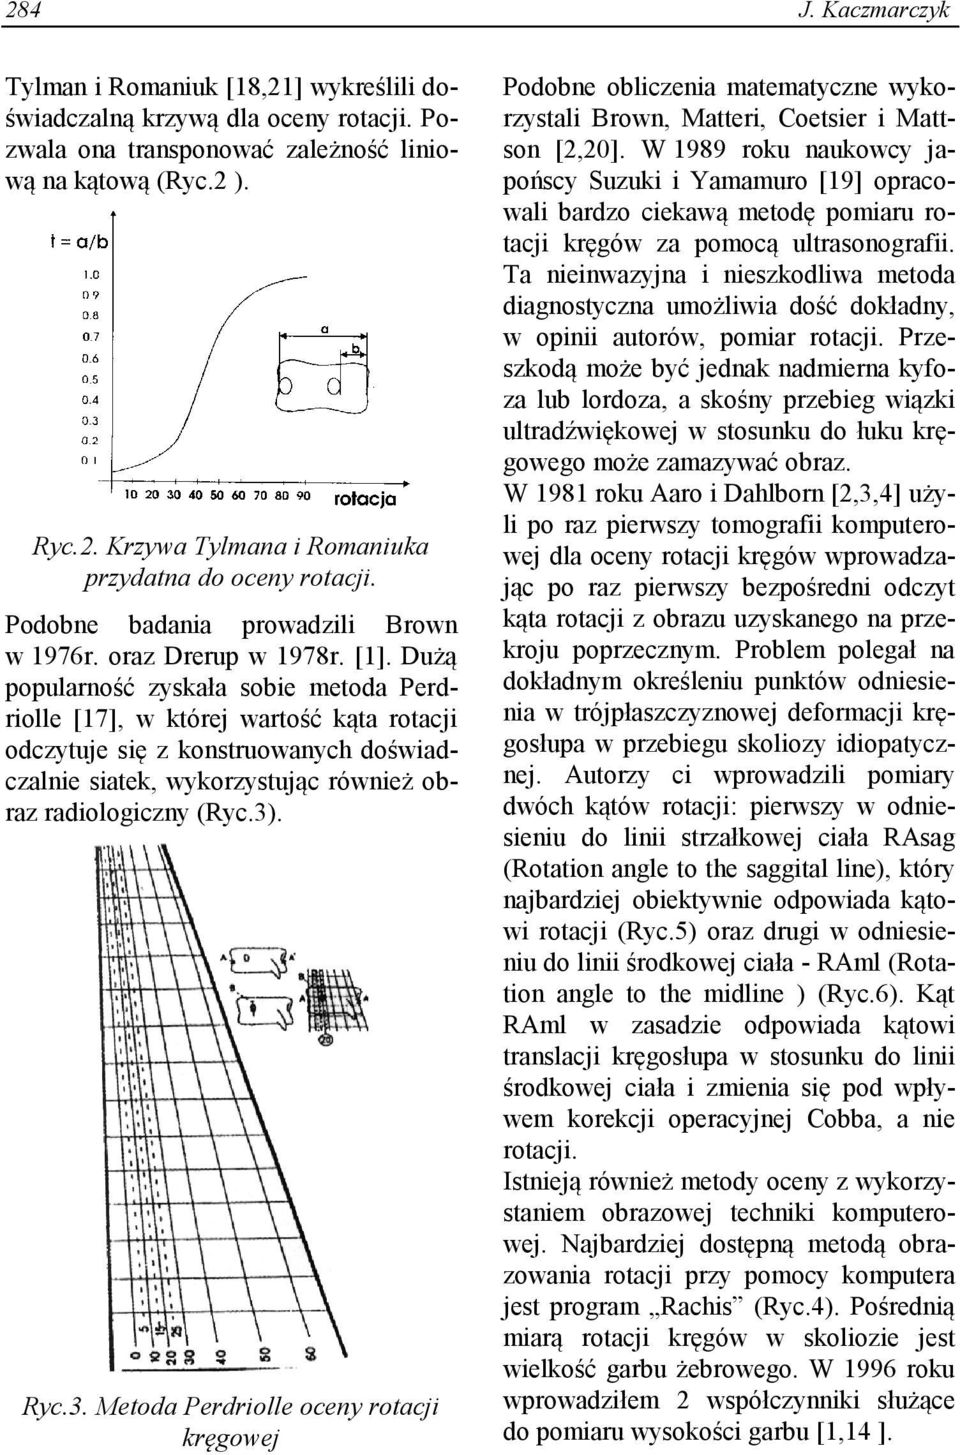 Dużą popularność zyskała sobie metoda Perdriolle [17], w której wartość kąta rotacji odczytuje się z konstruowanych doświadczalnie siatek, wykorzystując również obraz radiologiczny (Ryc.3)